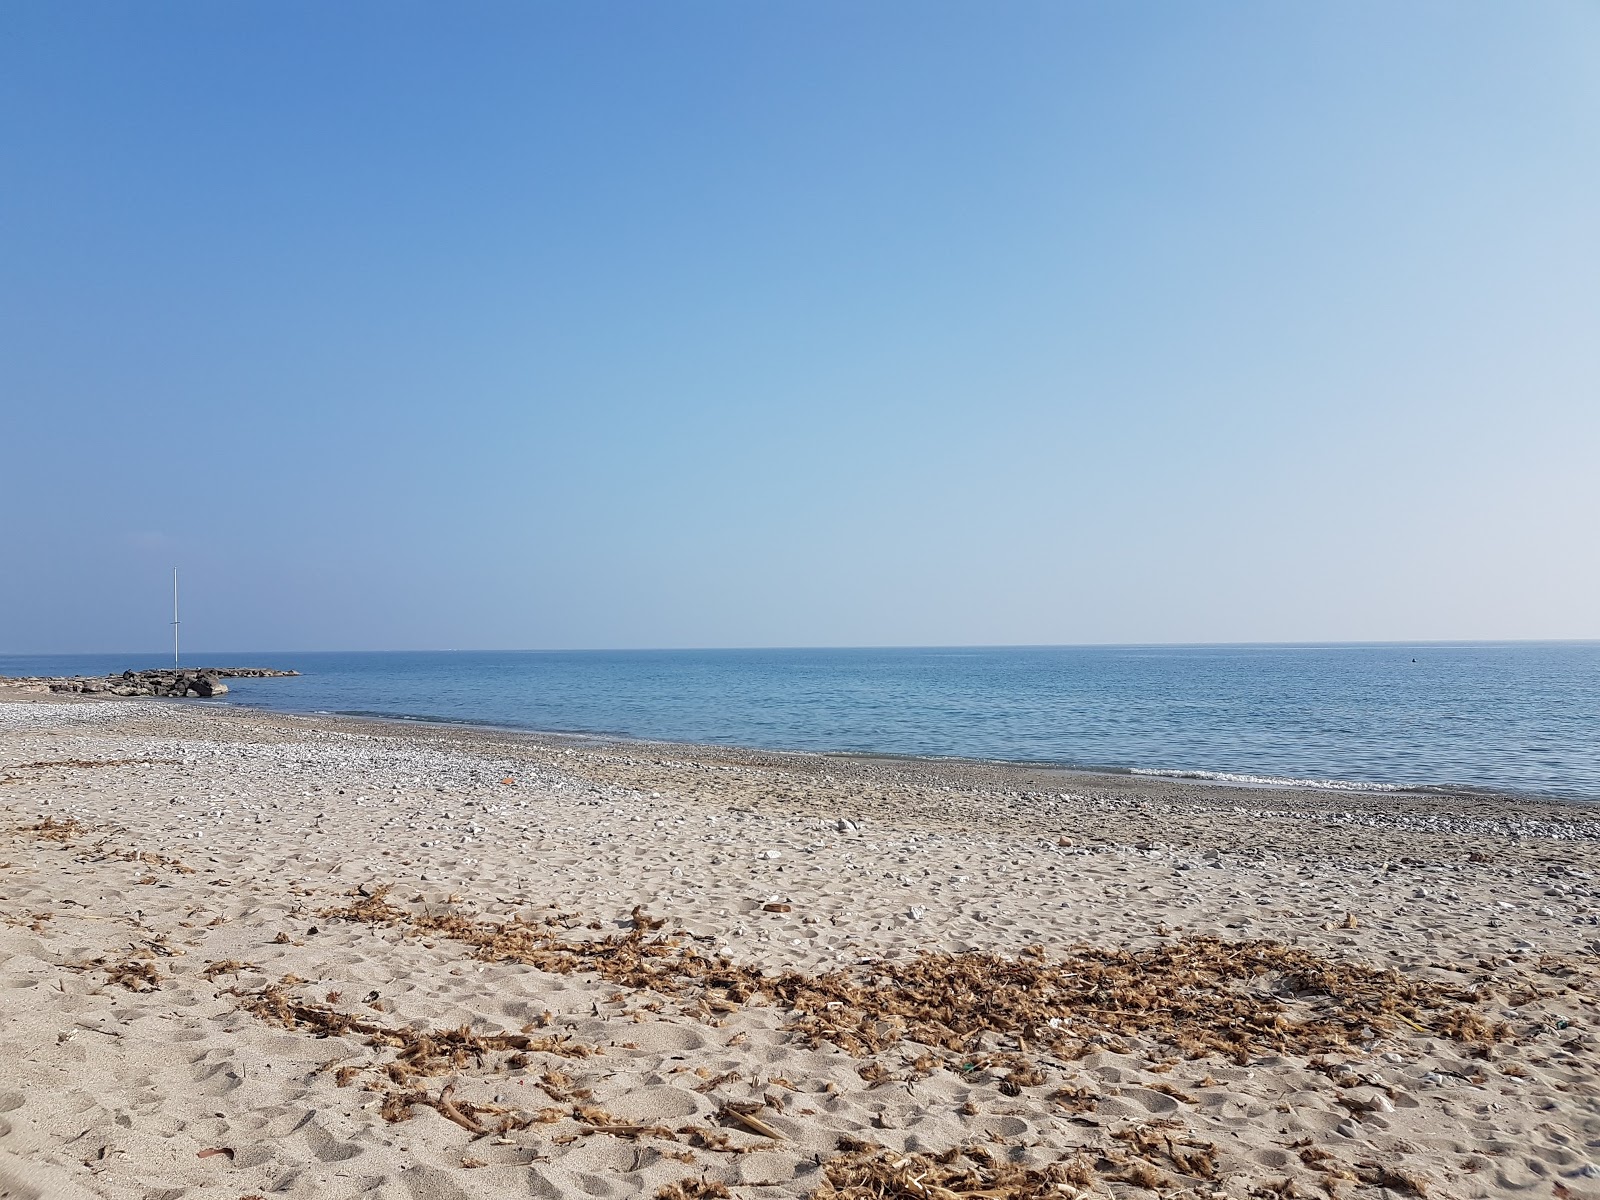 Foto af San Sebastiano beach - populært sted blandt afslapningskendere